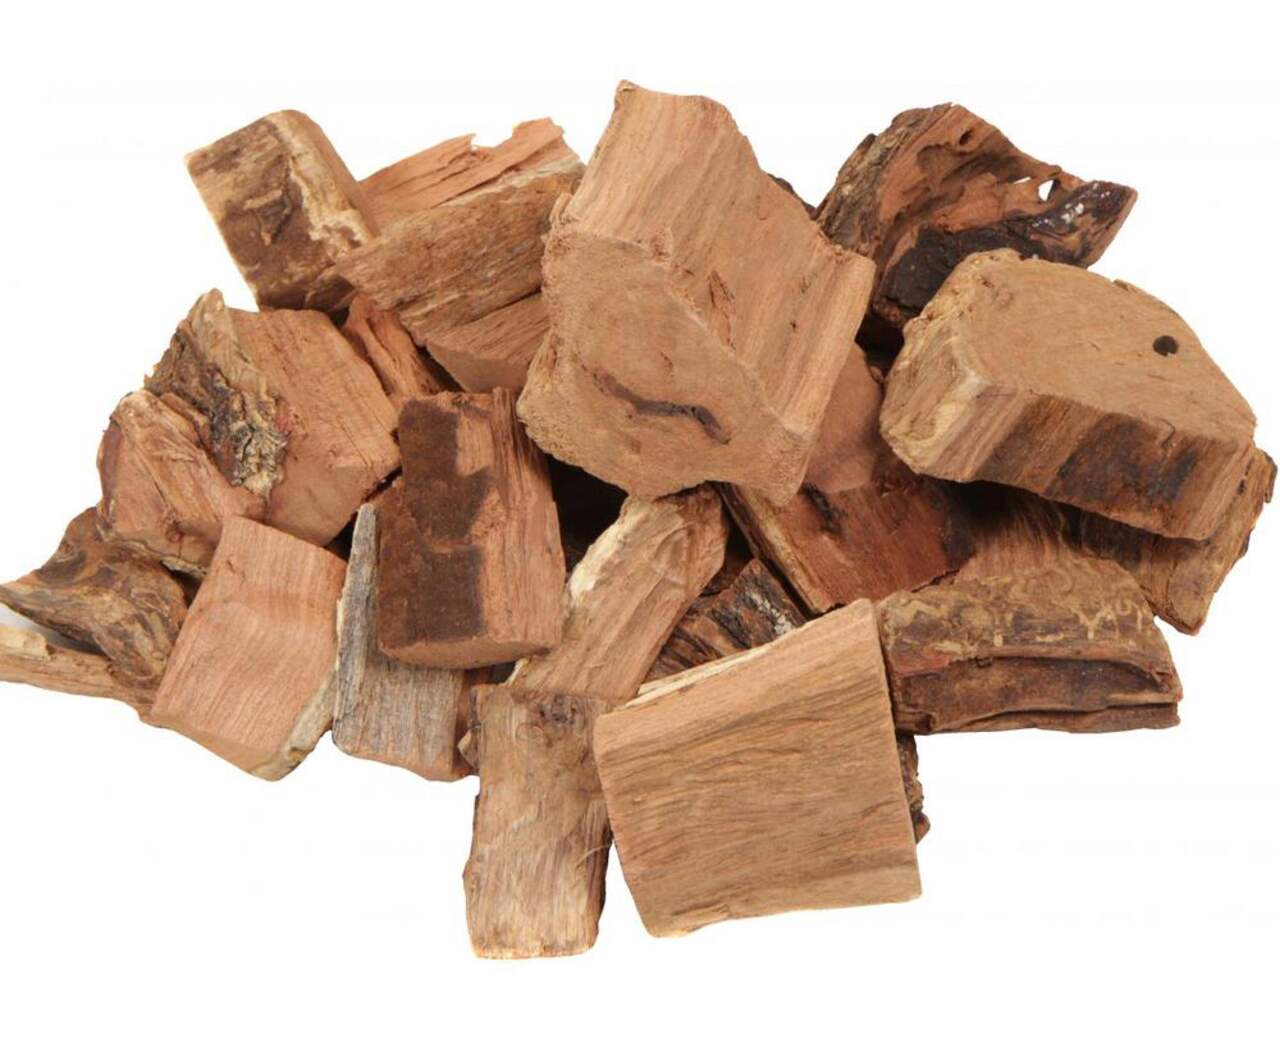 Copeaux de bois True North 100 % naturel, érable, 2 lb